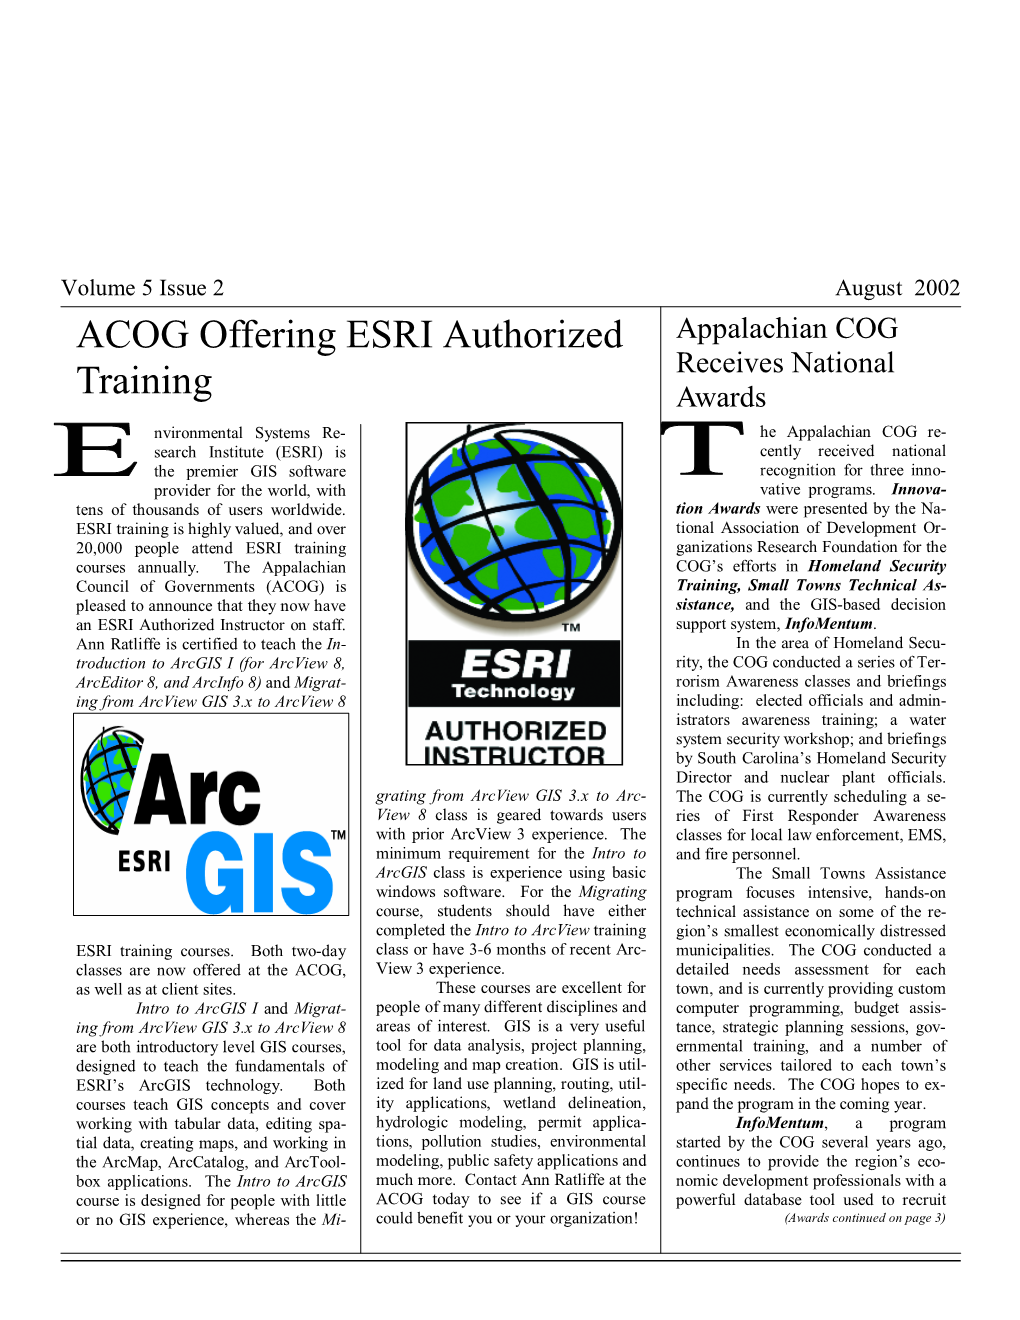 ACOG Offering ESRI Authorized Training